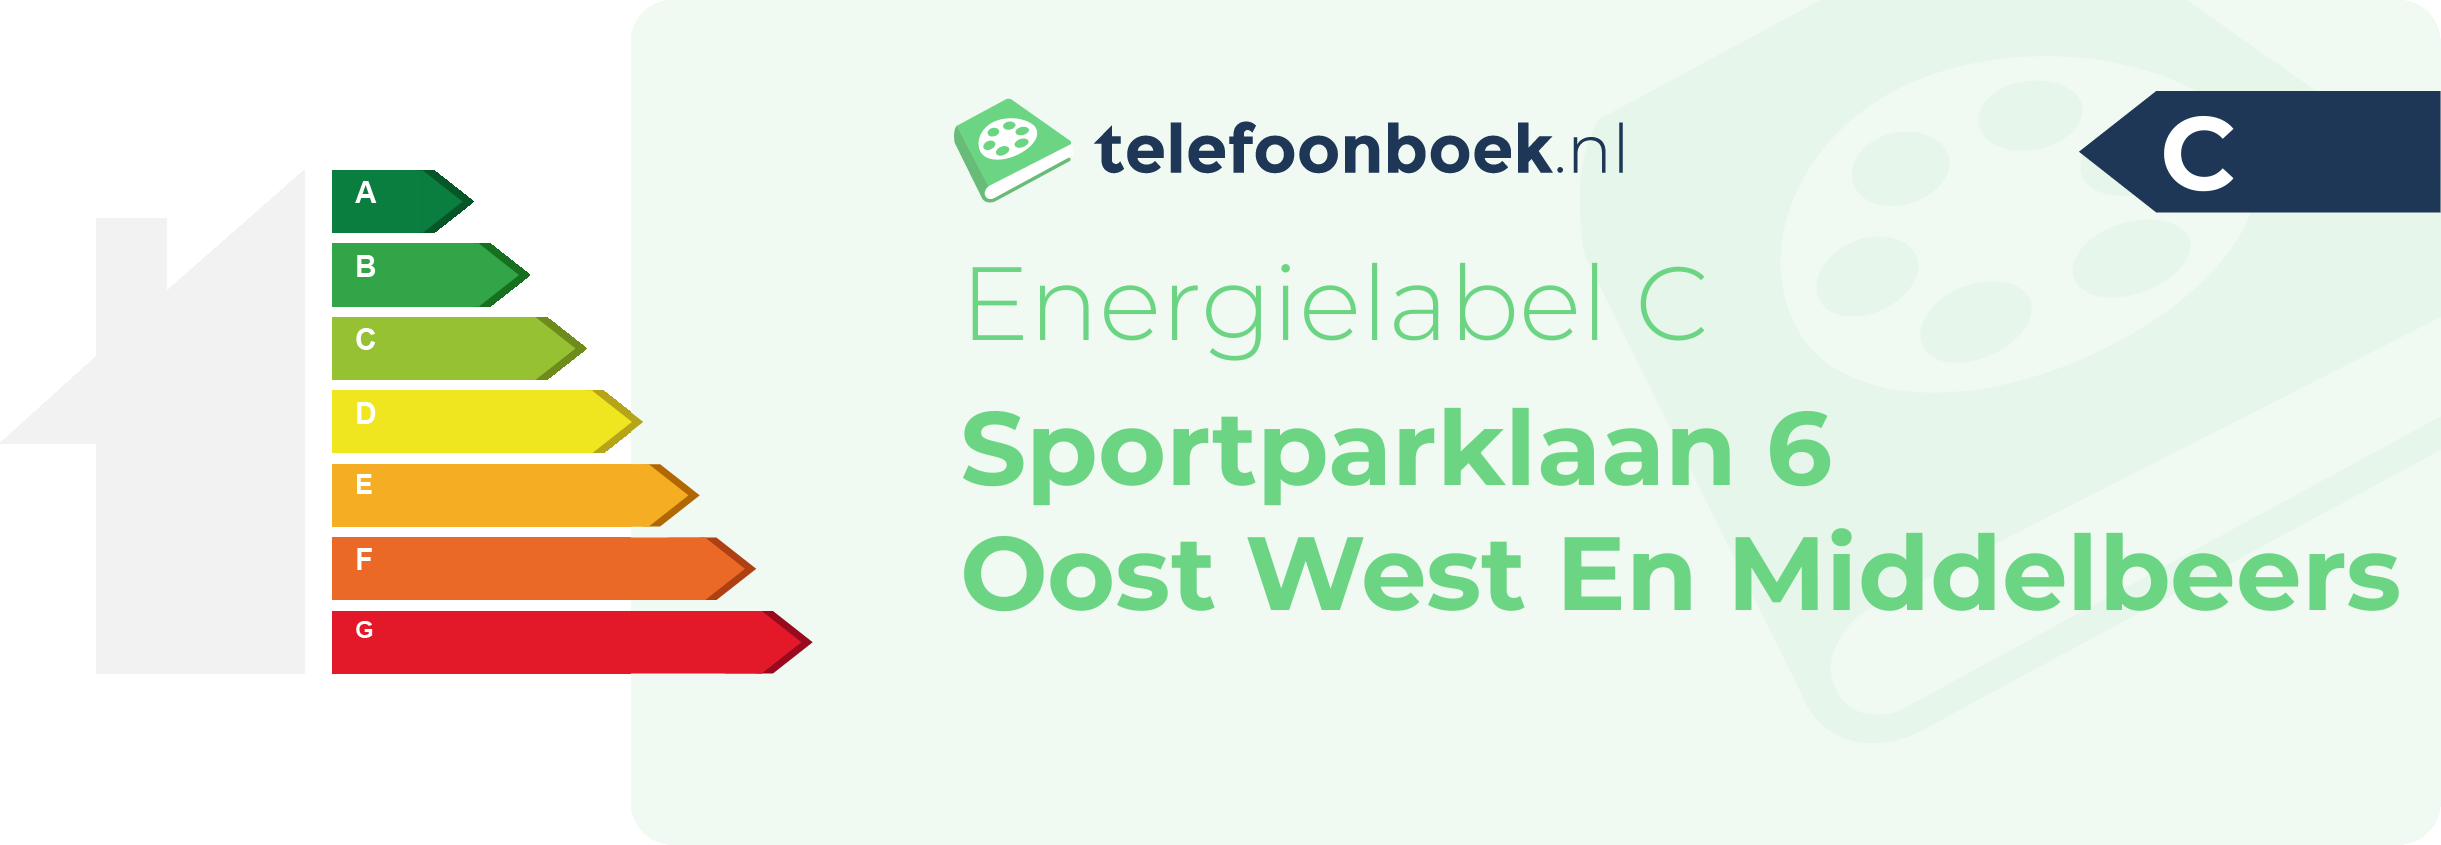 Energielabel Sportparklaan 6 Oost West En Middelbeers